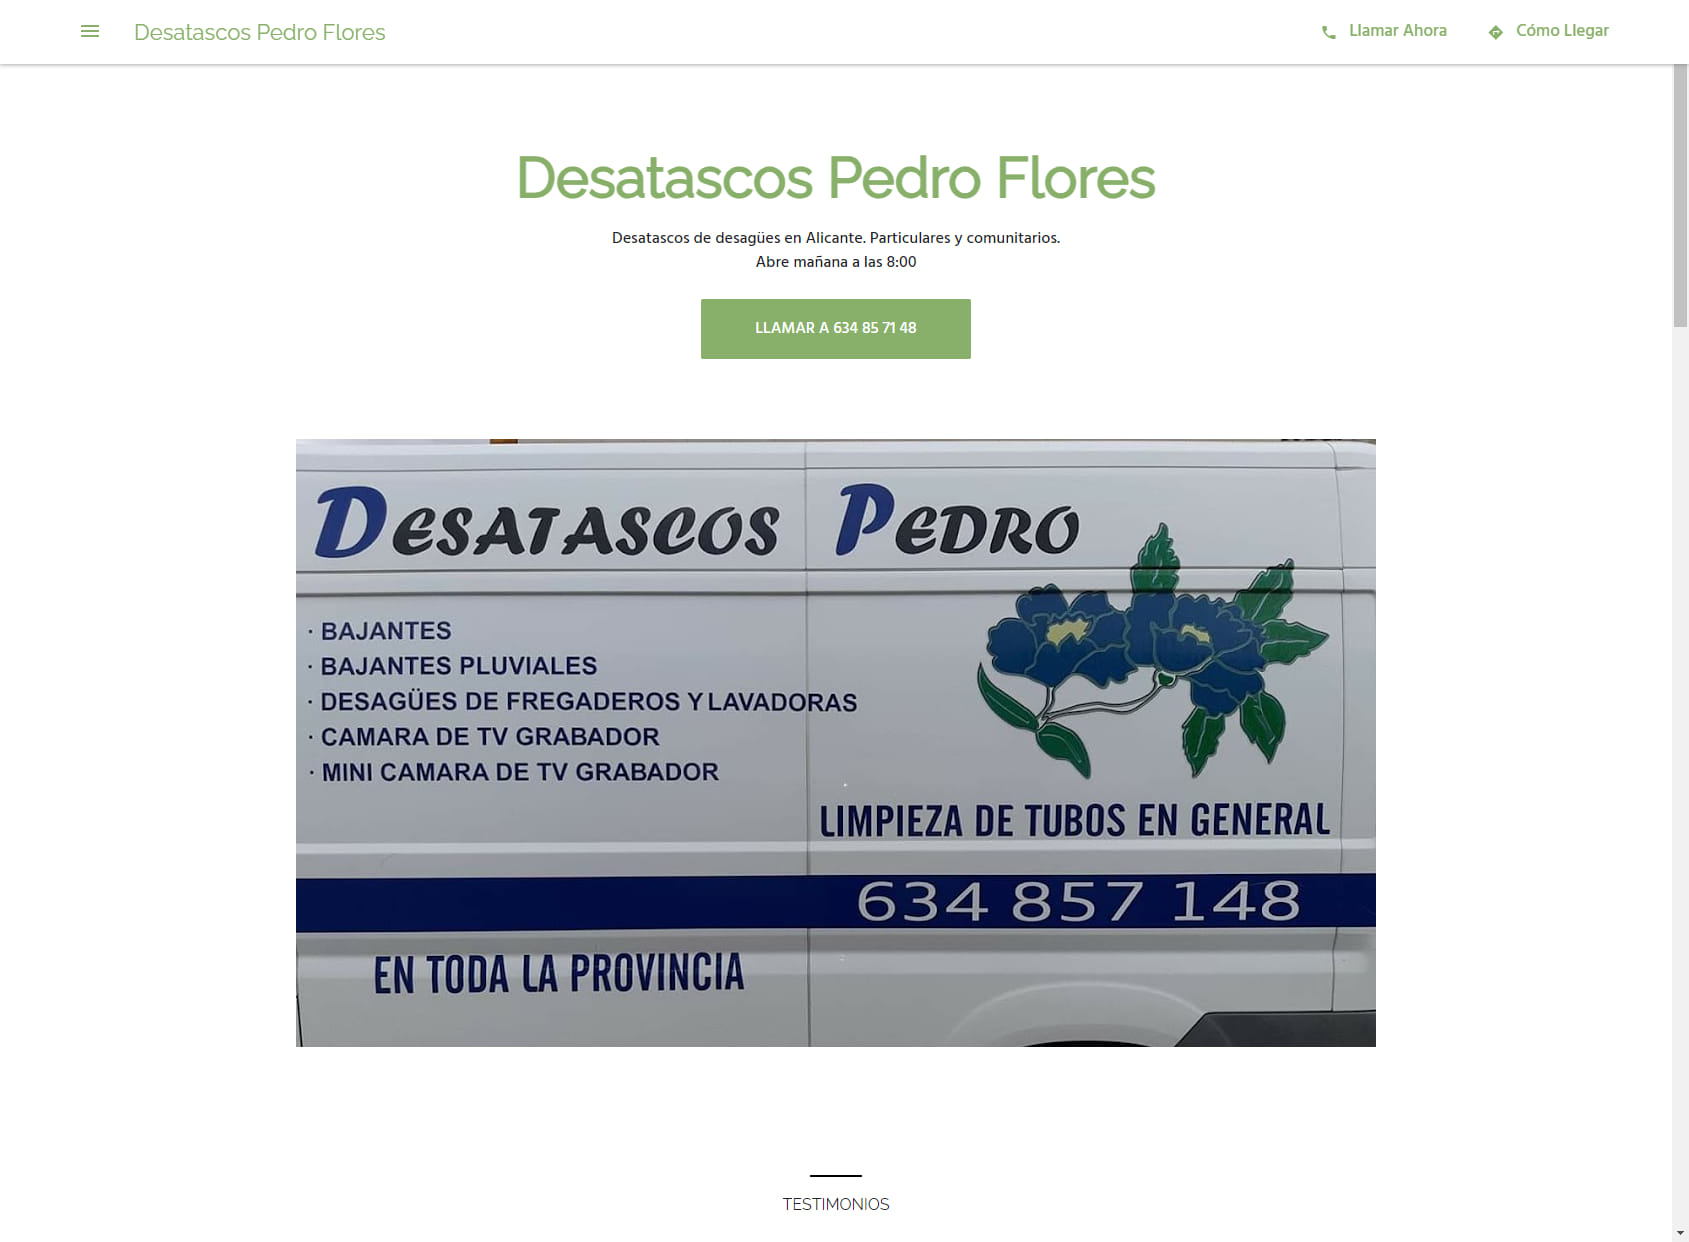 Desatascos Pedro Flores